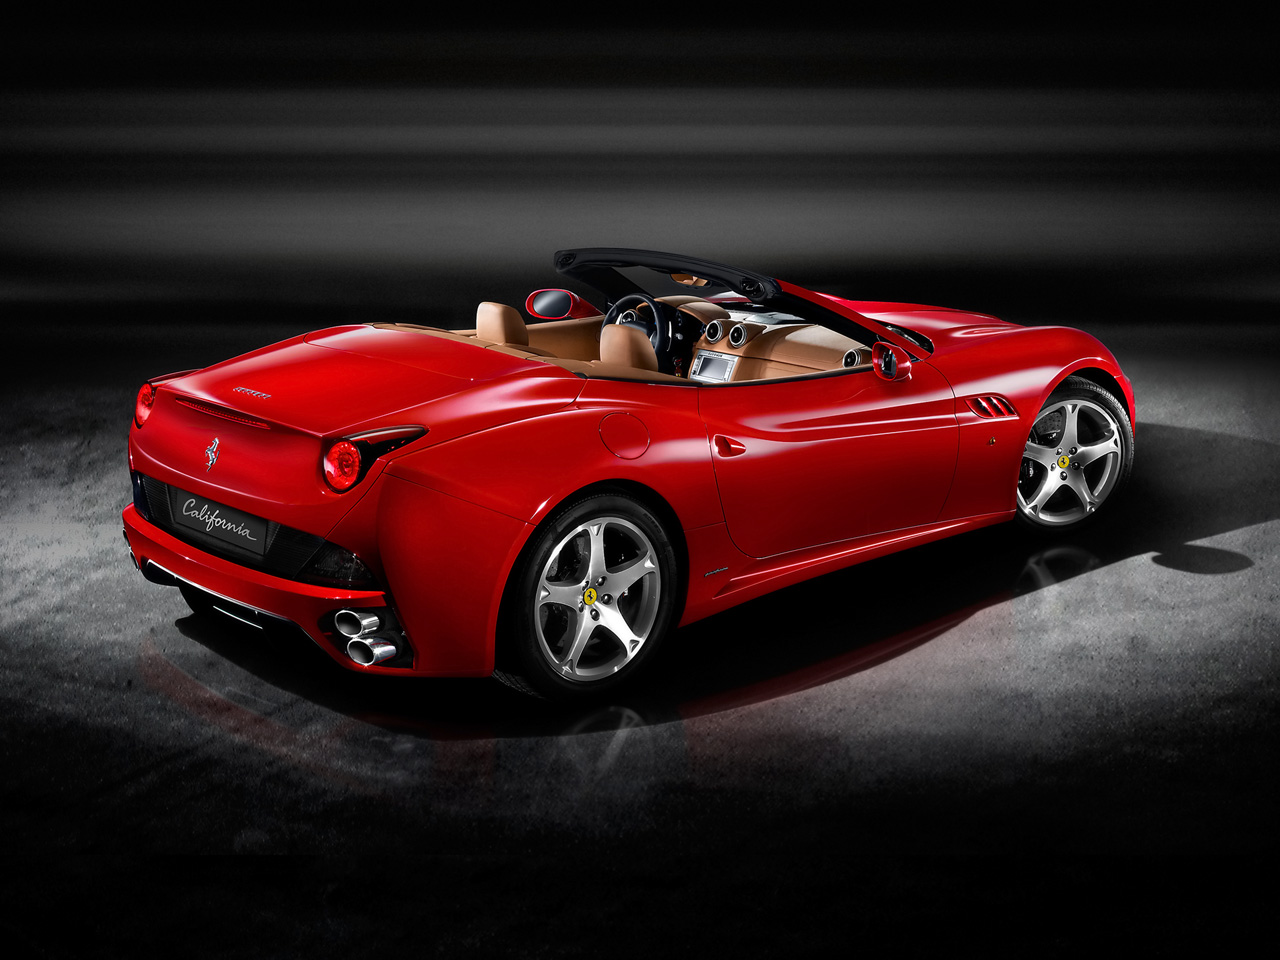 Ferrari Car Images Wallpaper Download